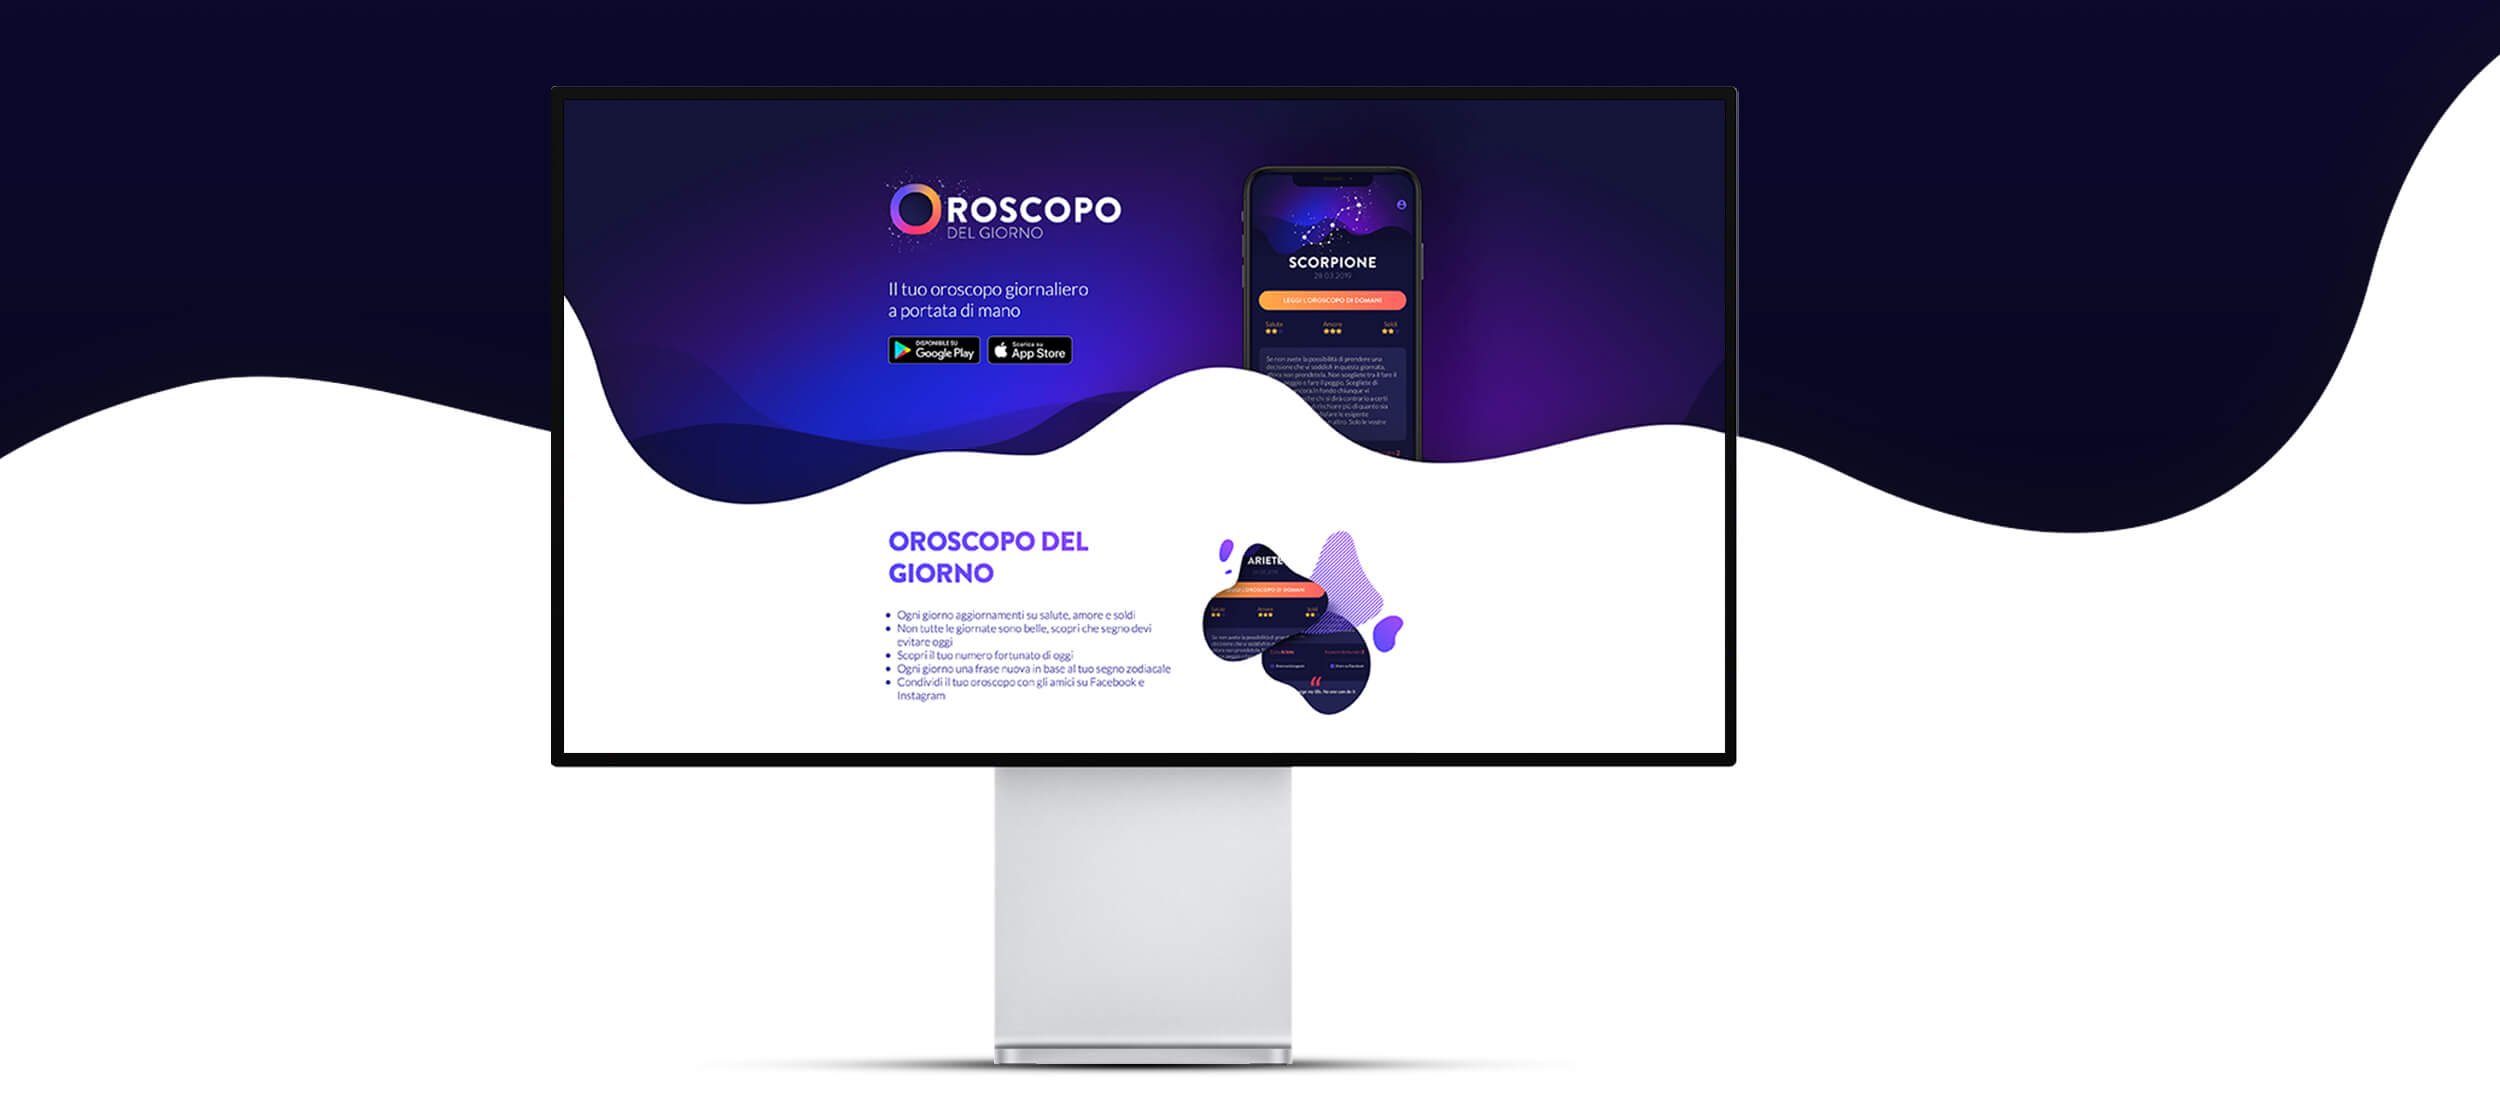 Oroscopo website